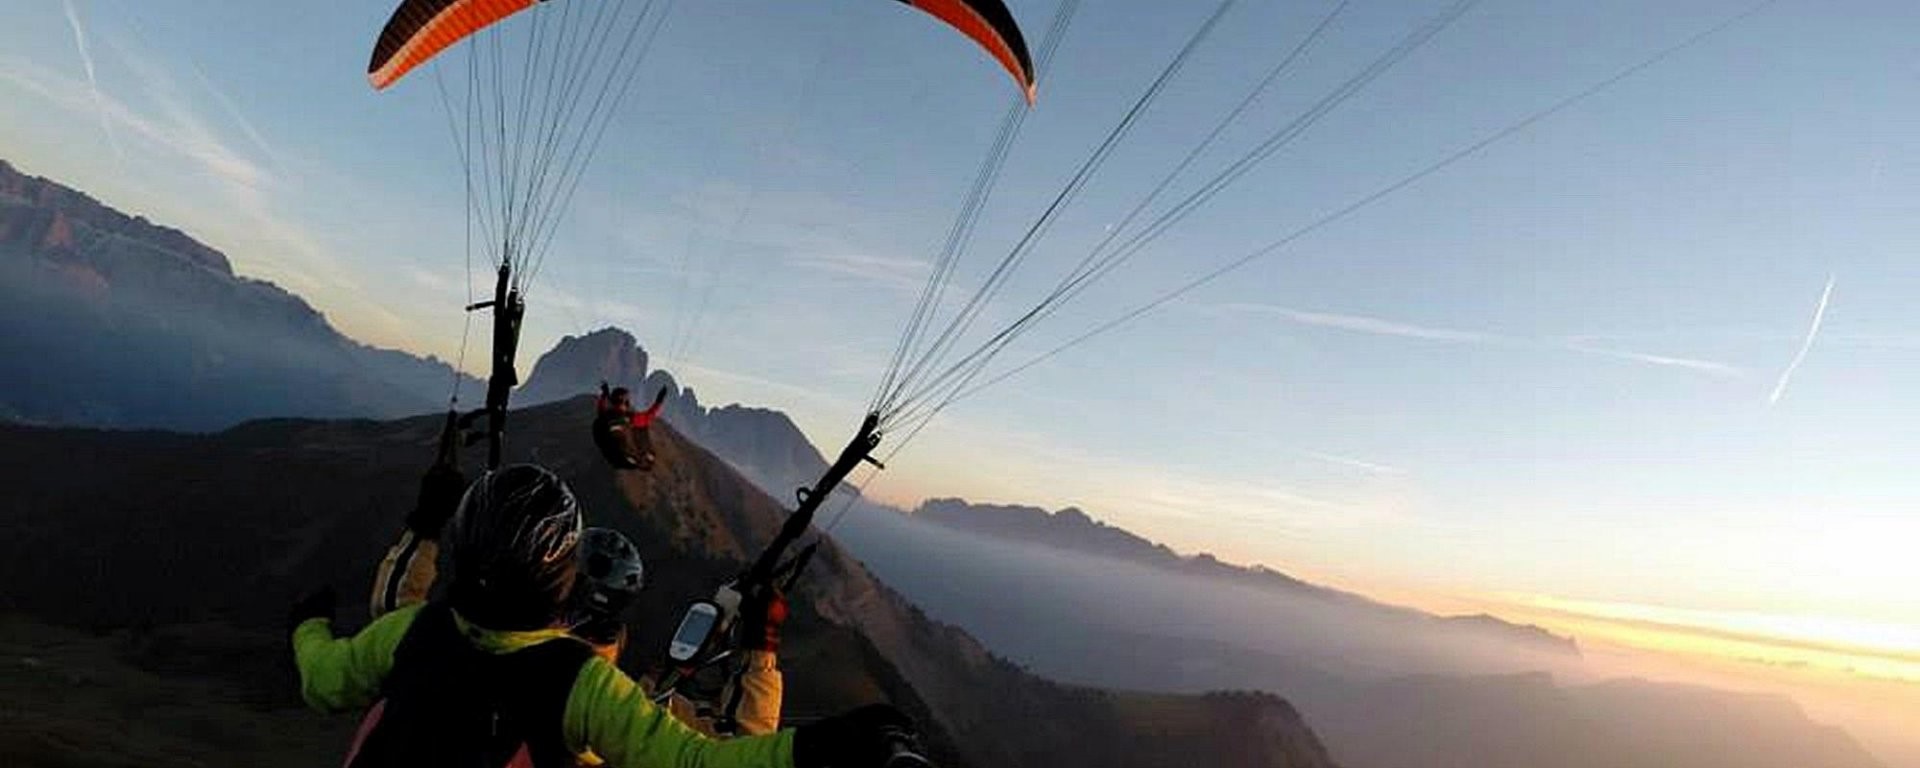 Adaptive paragliding